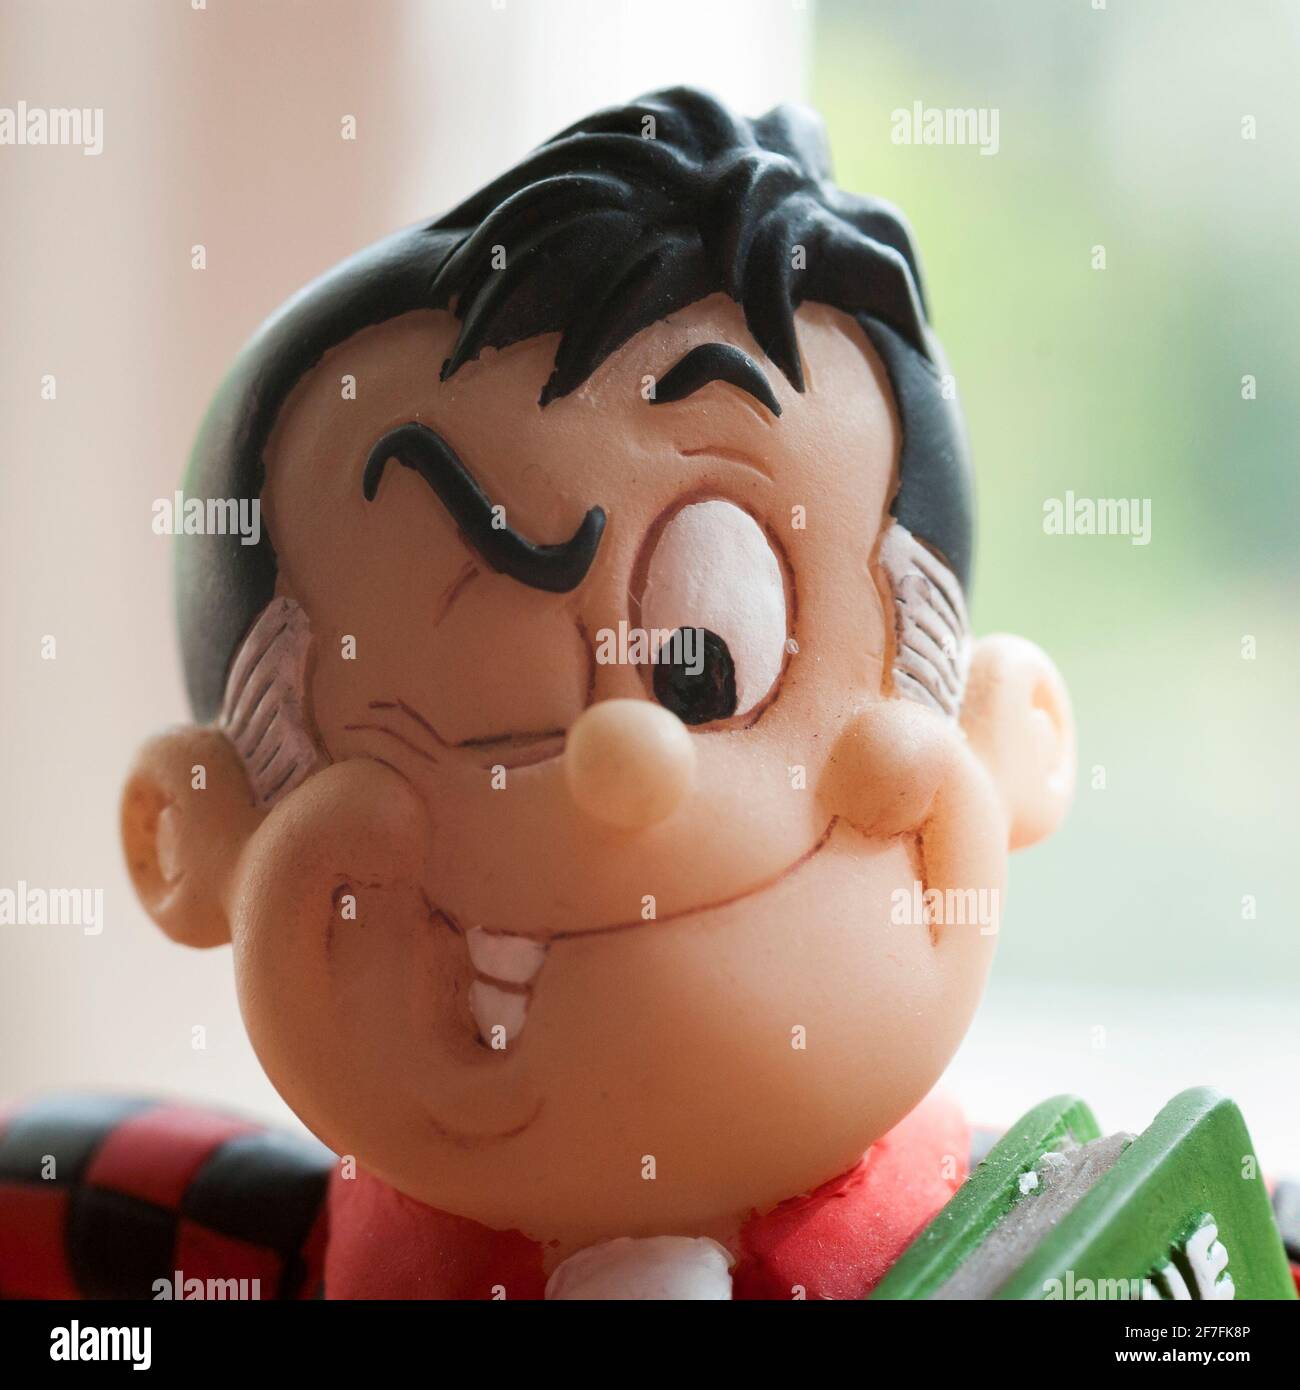 Un primo piano della testa di una piccola figurina di Roger the Dodger, un personaggio del fumetto della DC Thomson, il Beano. Foto Stock